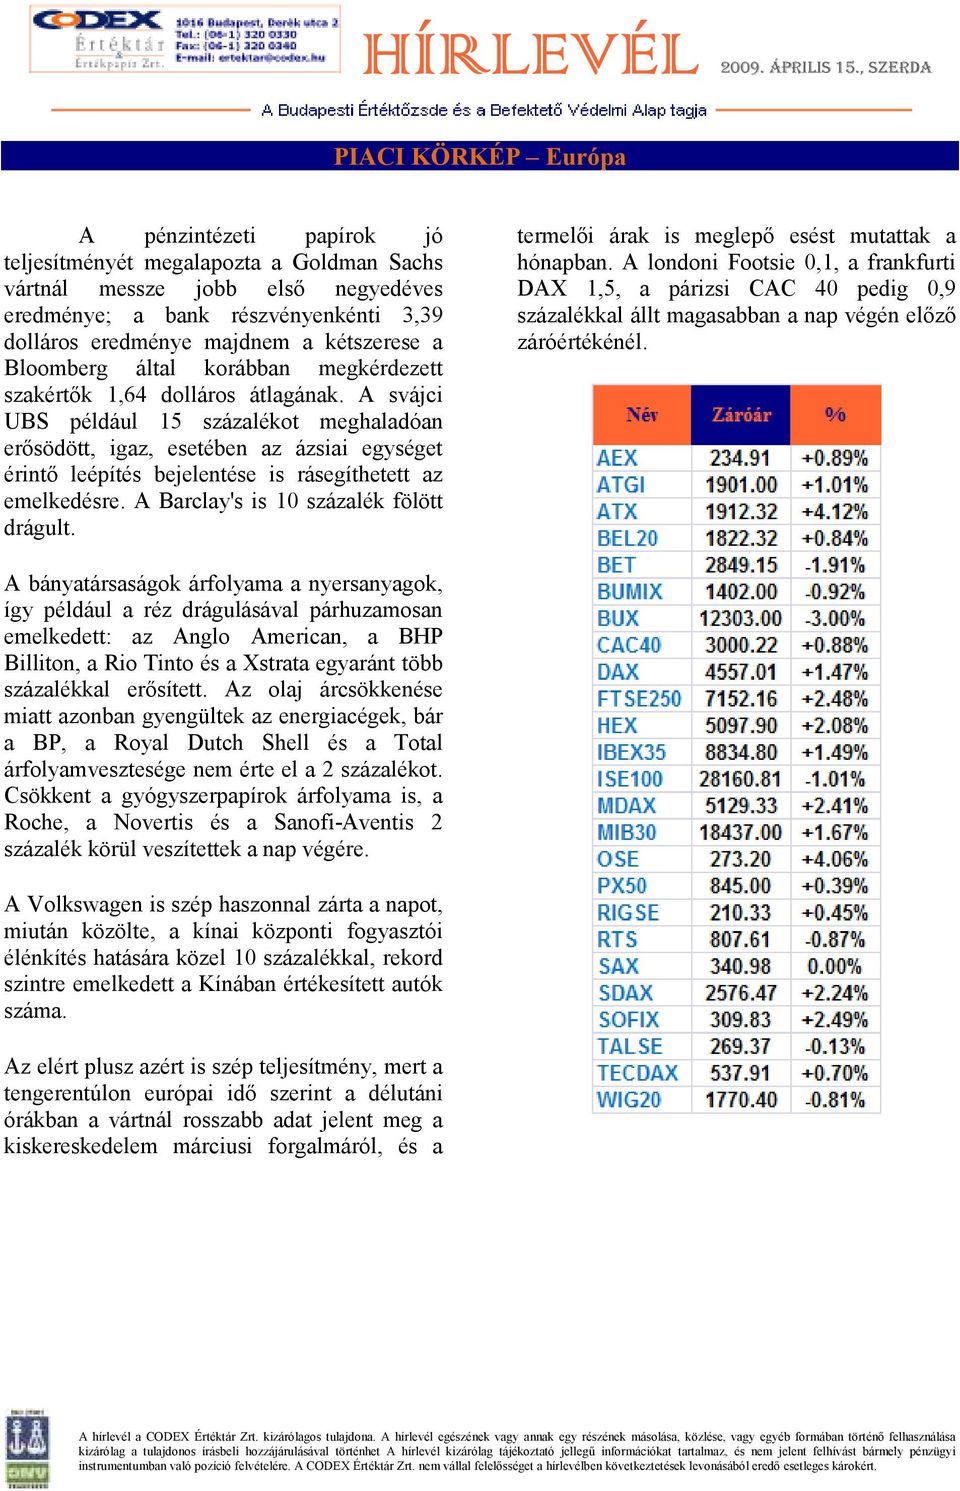 A svájci UBS például 15 százalékot meghaladóan erısödött, igaz, esetében az ázsiai egységet érintı leépítés bejelentése is rásegíthetett az emelkedésre. A Barclay's is 10 százalék fölött drágult.